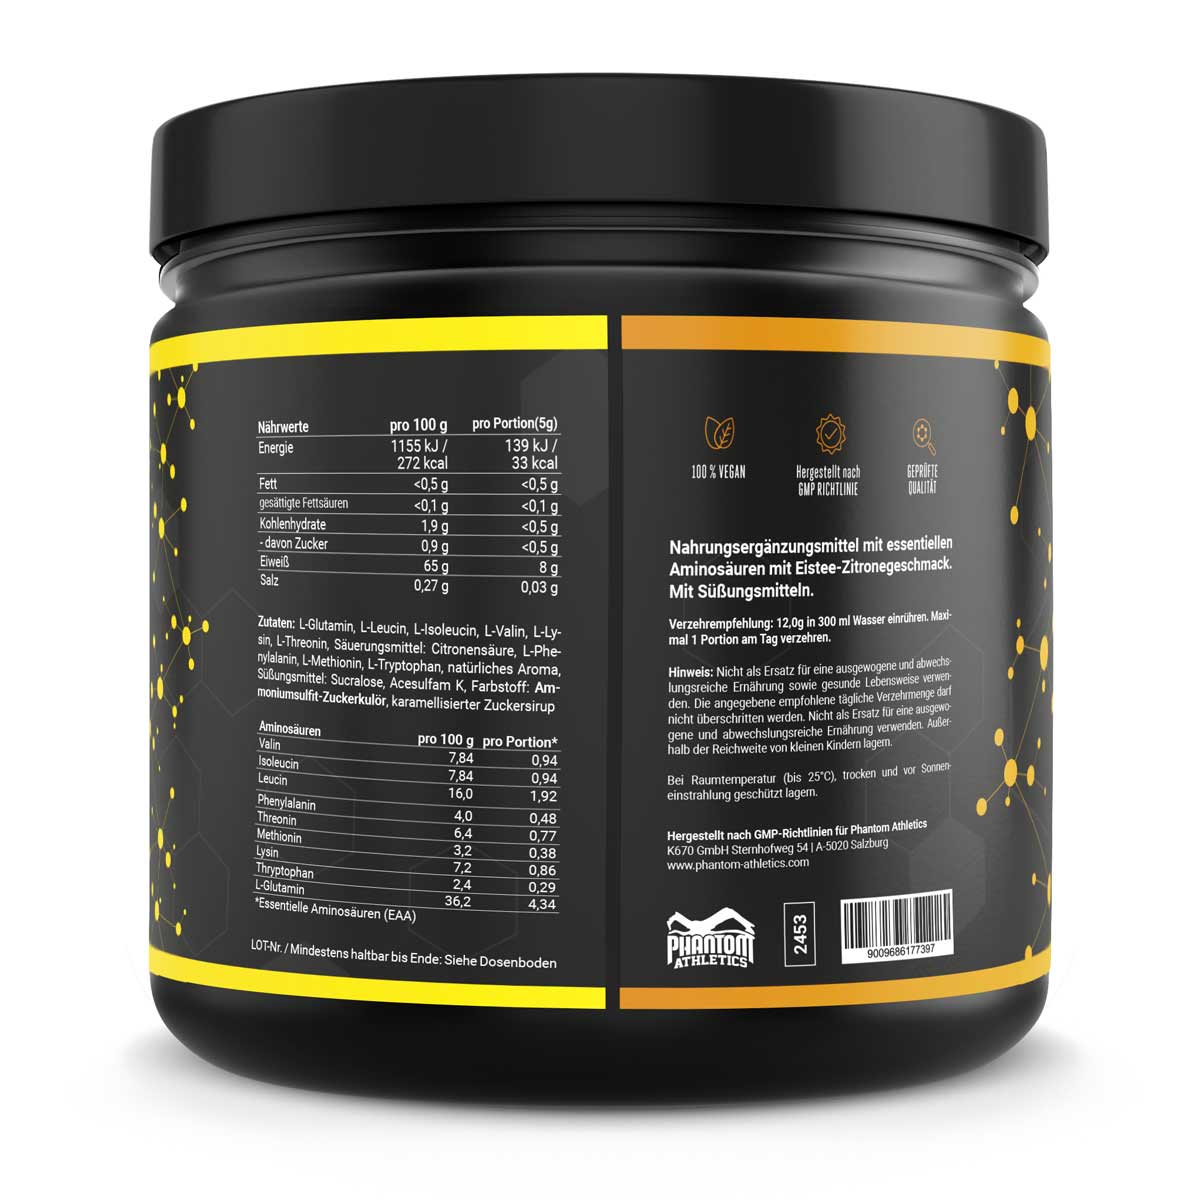 Phantom EAA - Essentielle Aminosäuren mit Eistee Zitronen Geschmack. Für eine optimale Versorgung im Kampfsport mit hochwertigen Inhaltsstoffen.